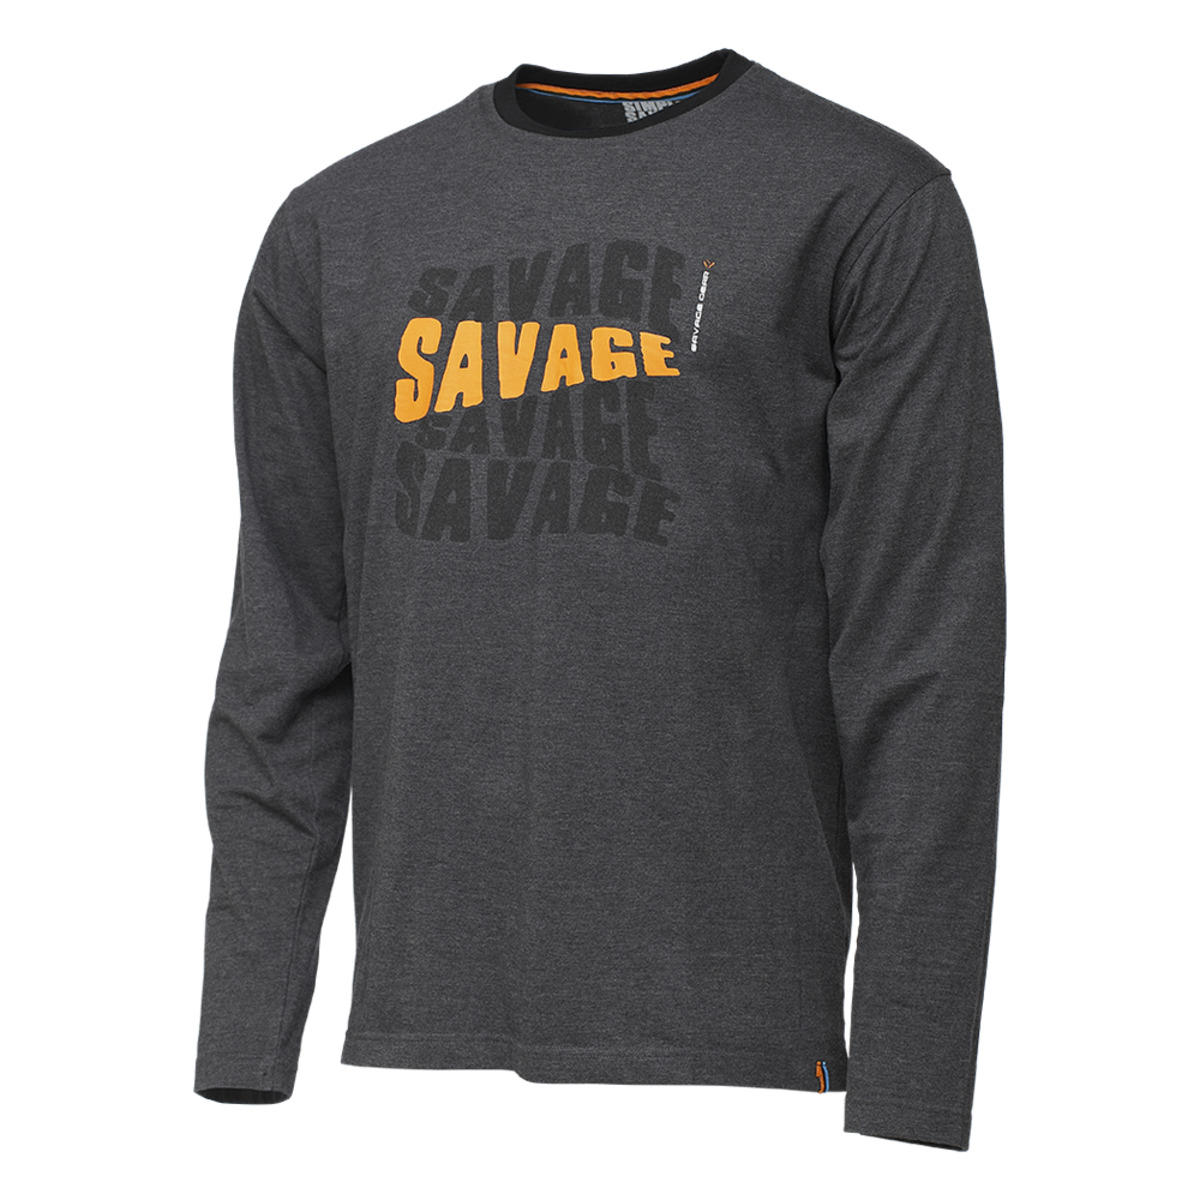 Savage Gear Simply Savage Logo Tee Long Sleeve - L DARK GREY MELANGE